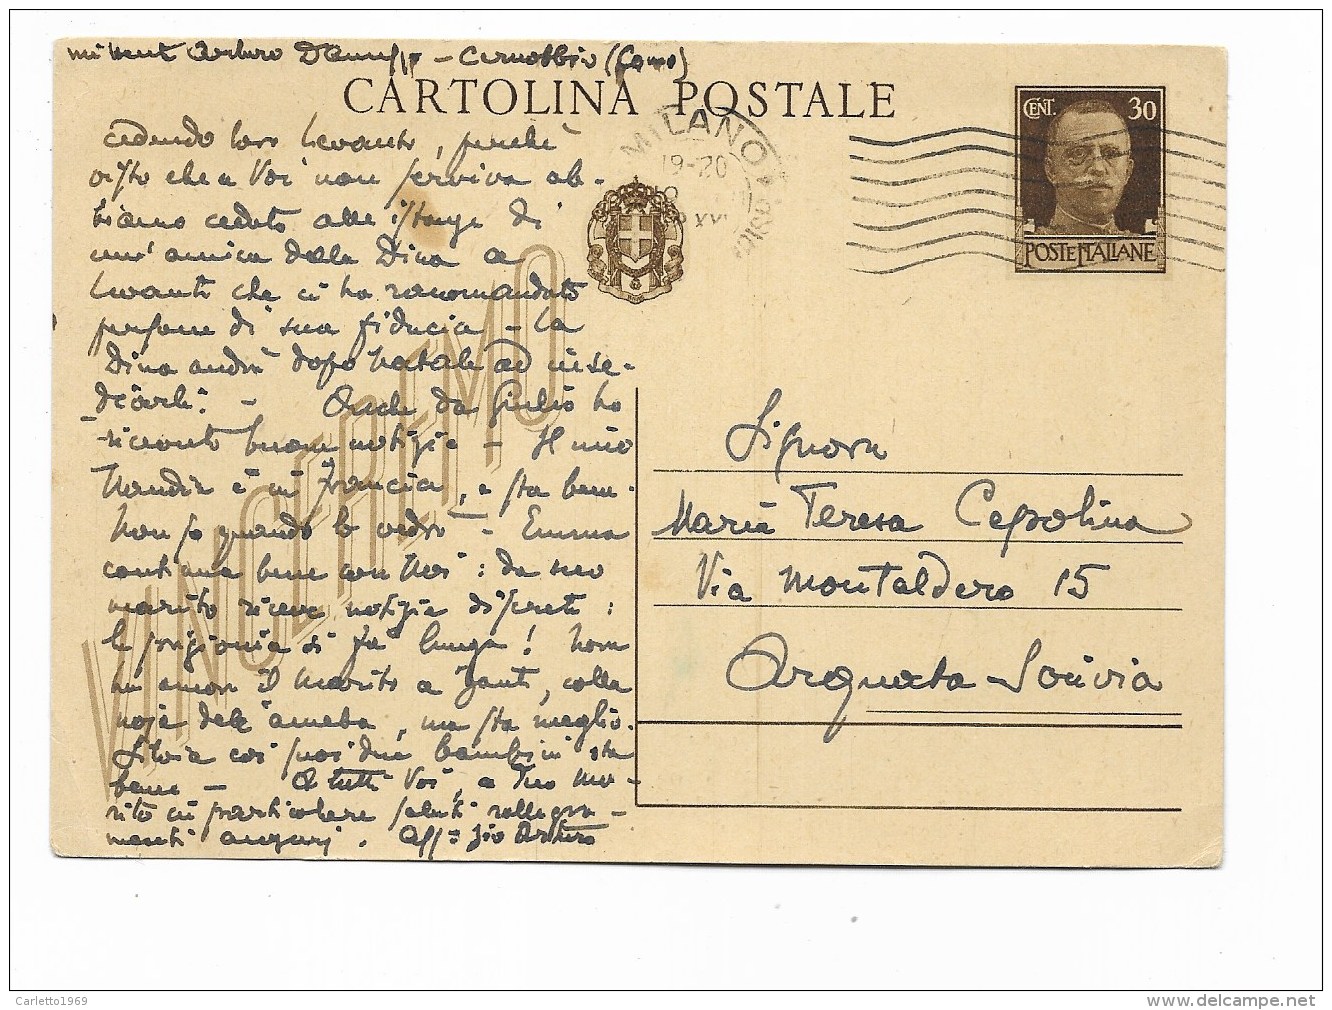 CARTOLINA POSTALE  TIMBRO MILANO COMO 1942  - VIAGGIATA FG - Histoire